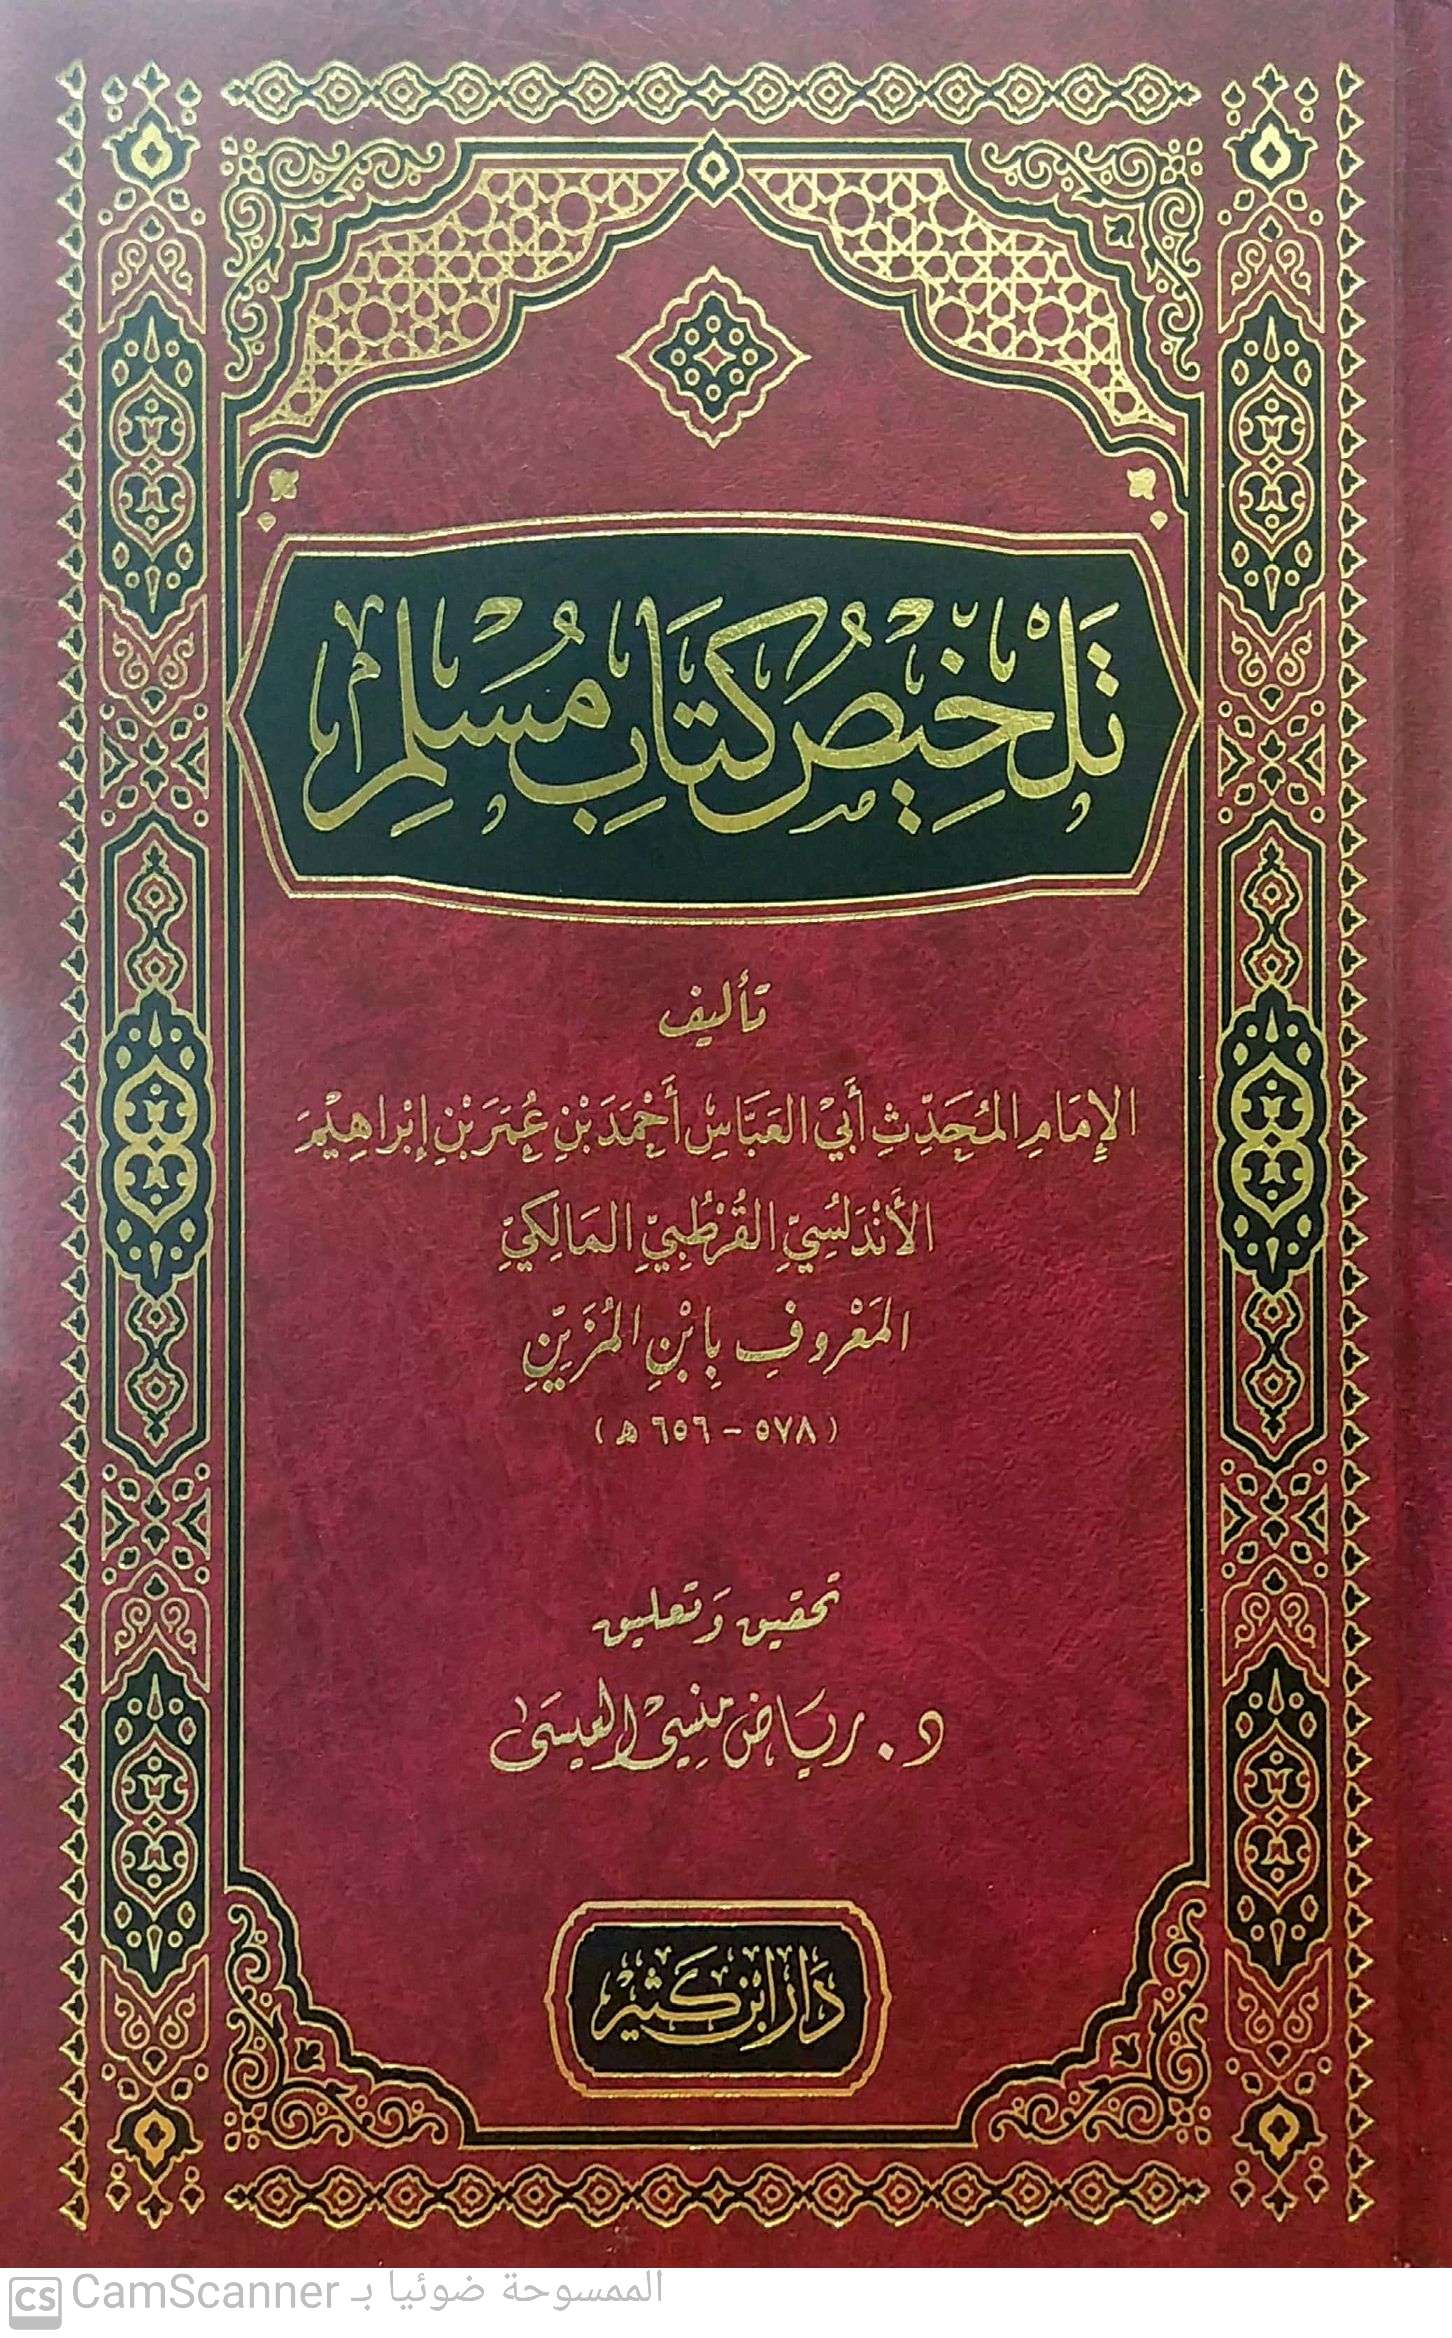 تلخيص كتاب مسلم